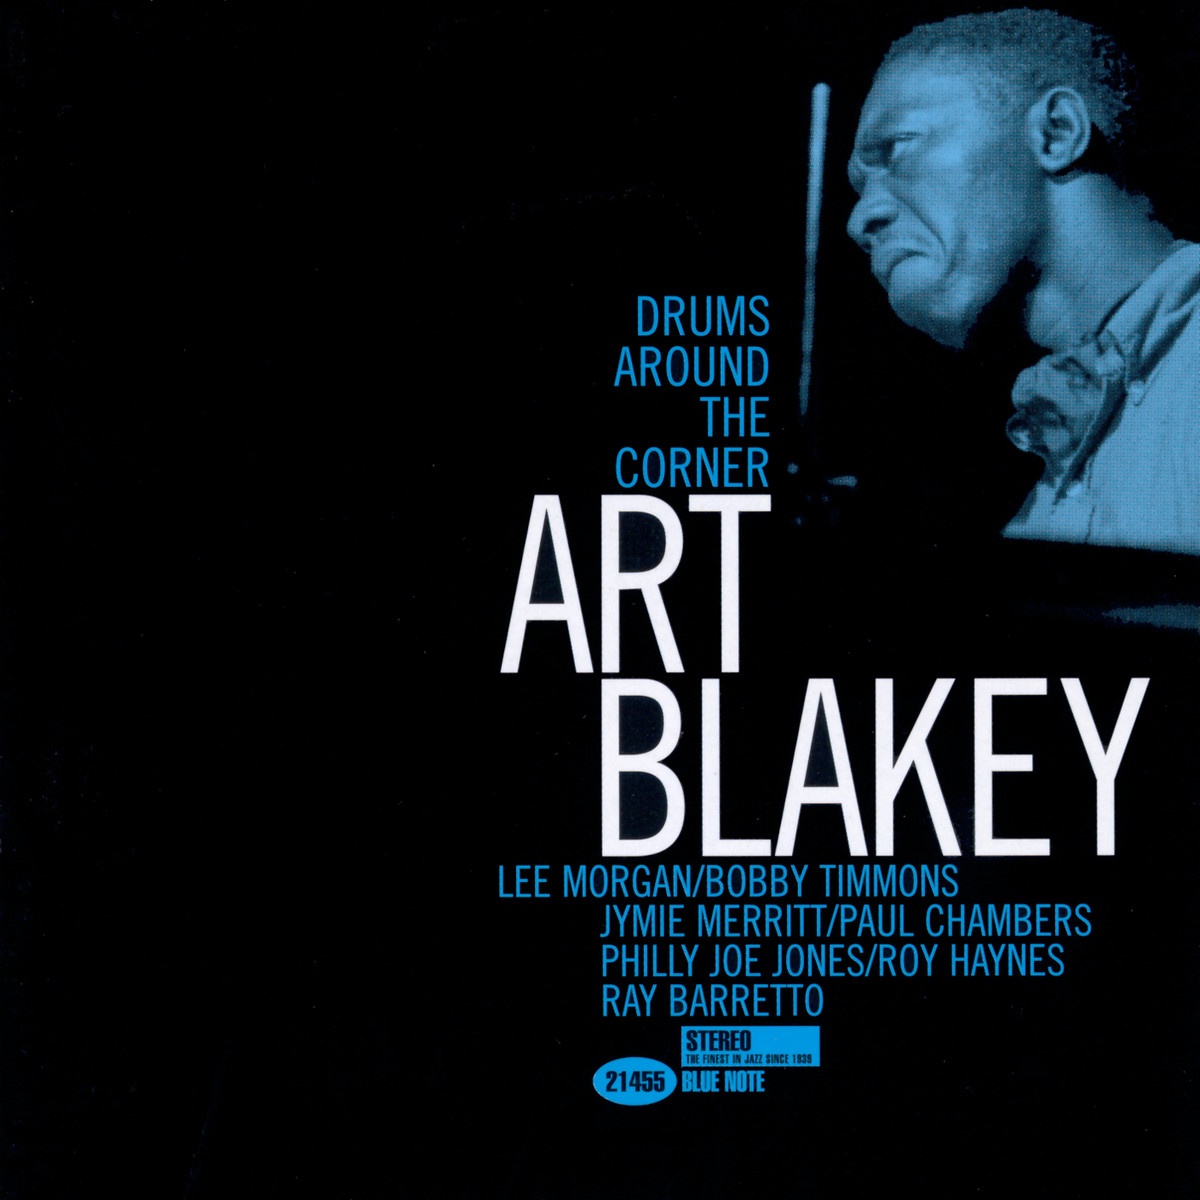 Blakey's Blues